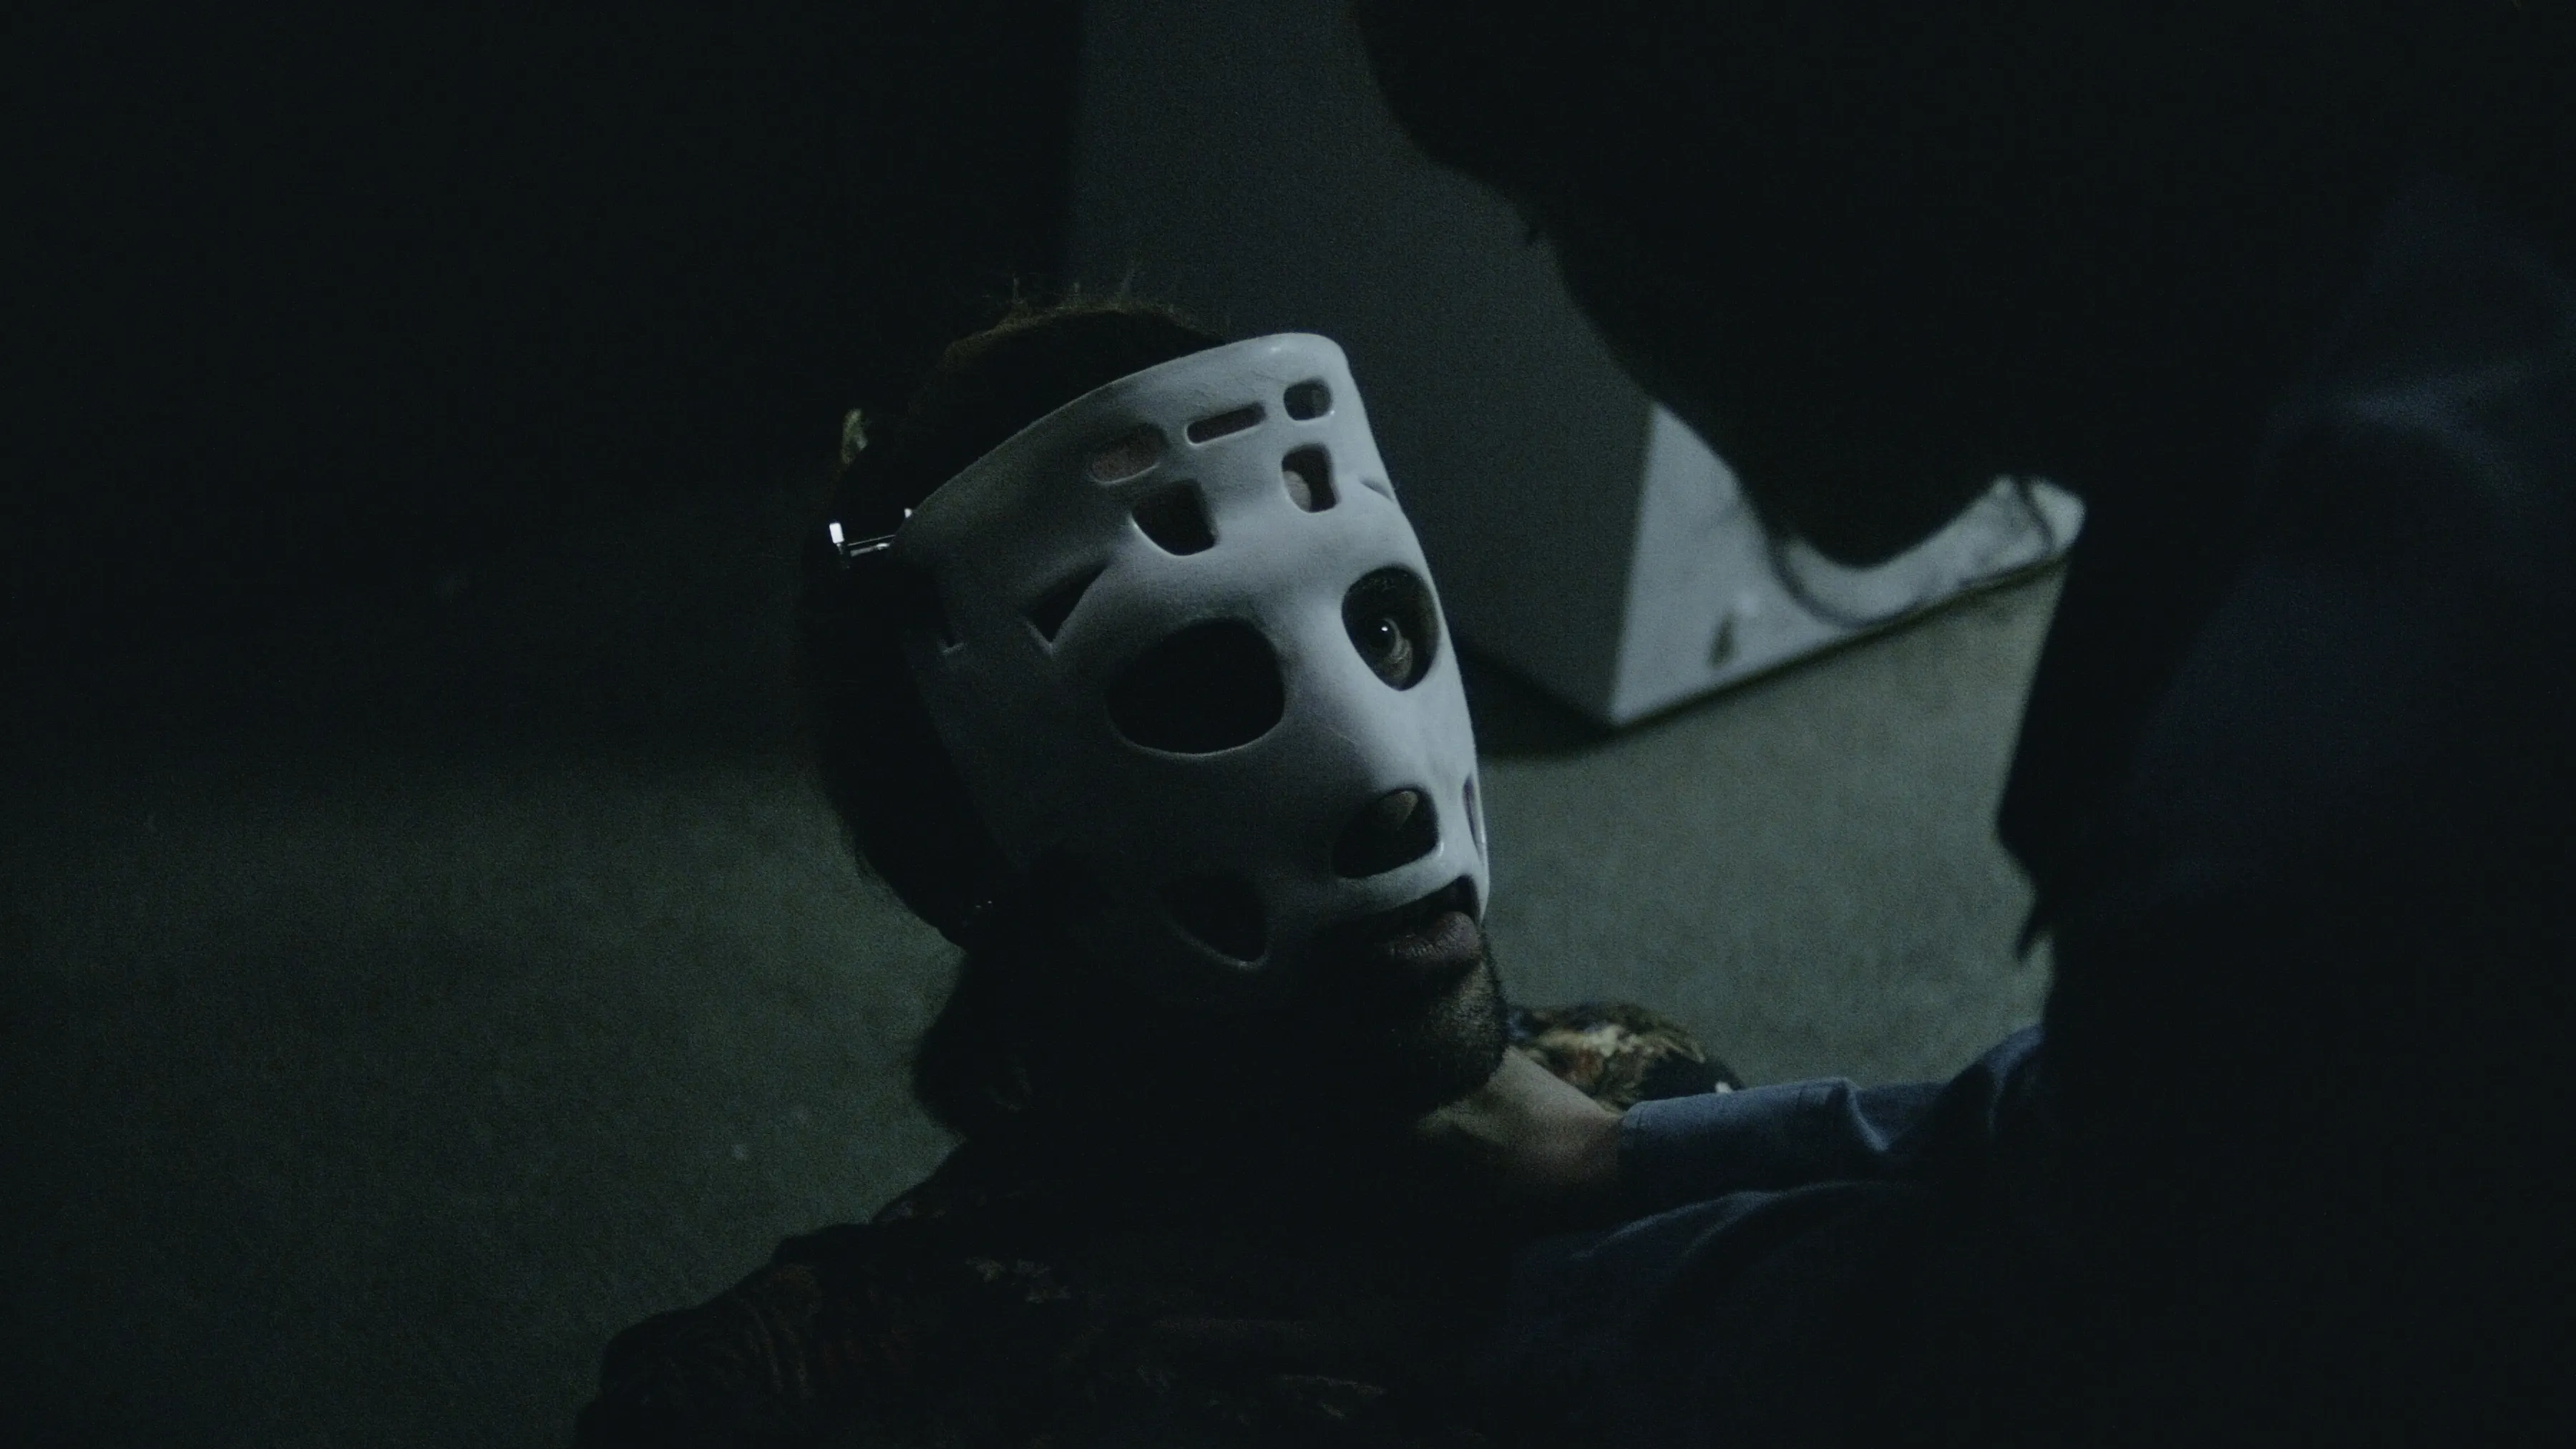 Bild aus dem Film: Mann mit alter Eishockey-Maske wird von Frau gewürgt.